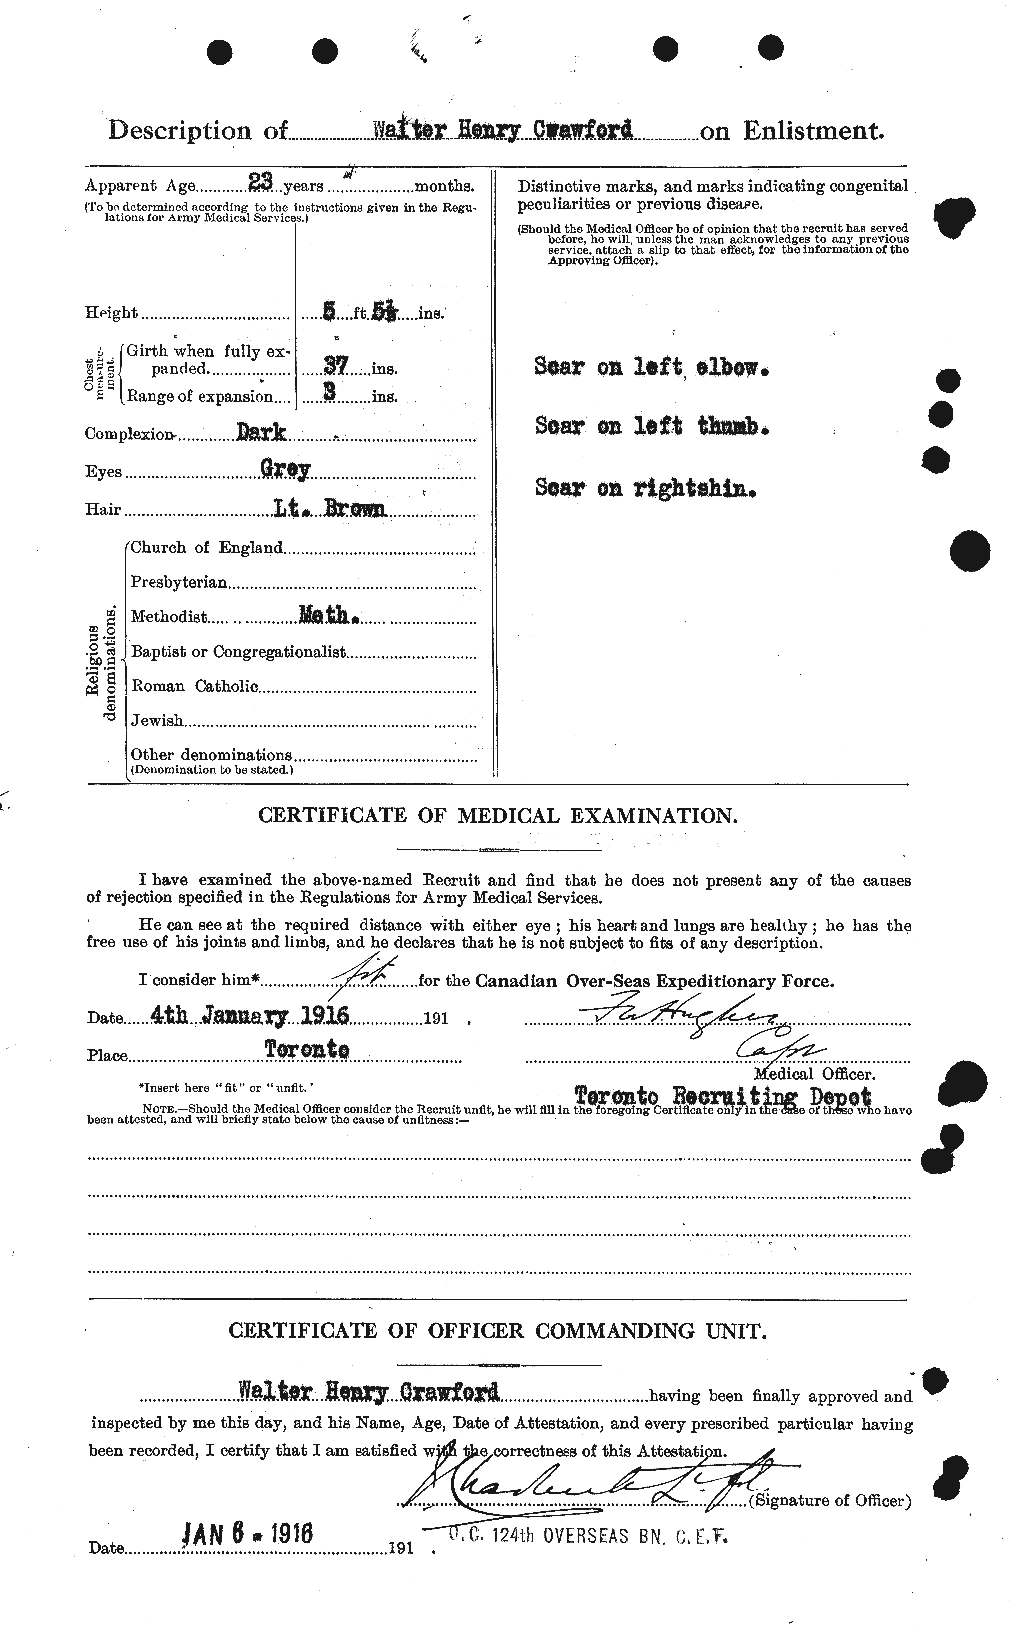 Dossiers du Personnel de la Première Guerre mondiale - CEC 061173b